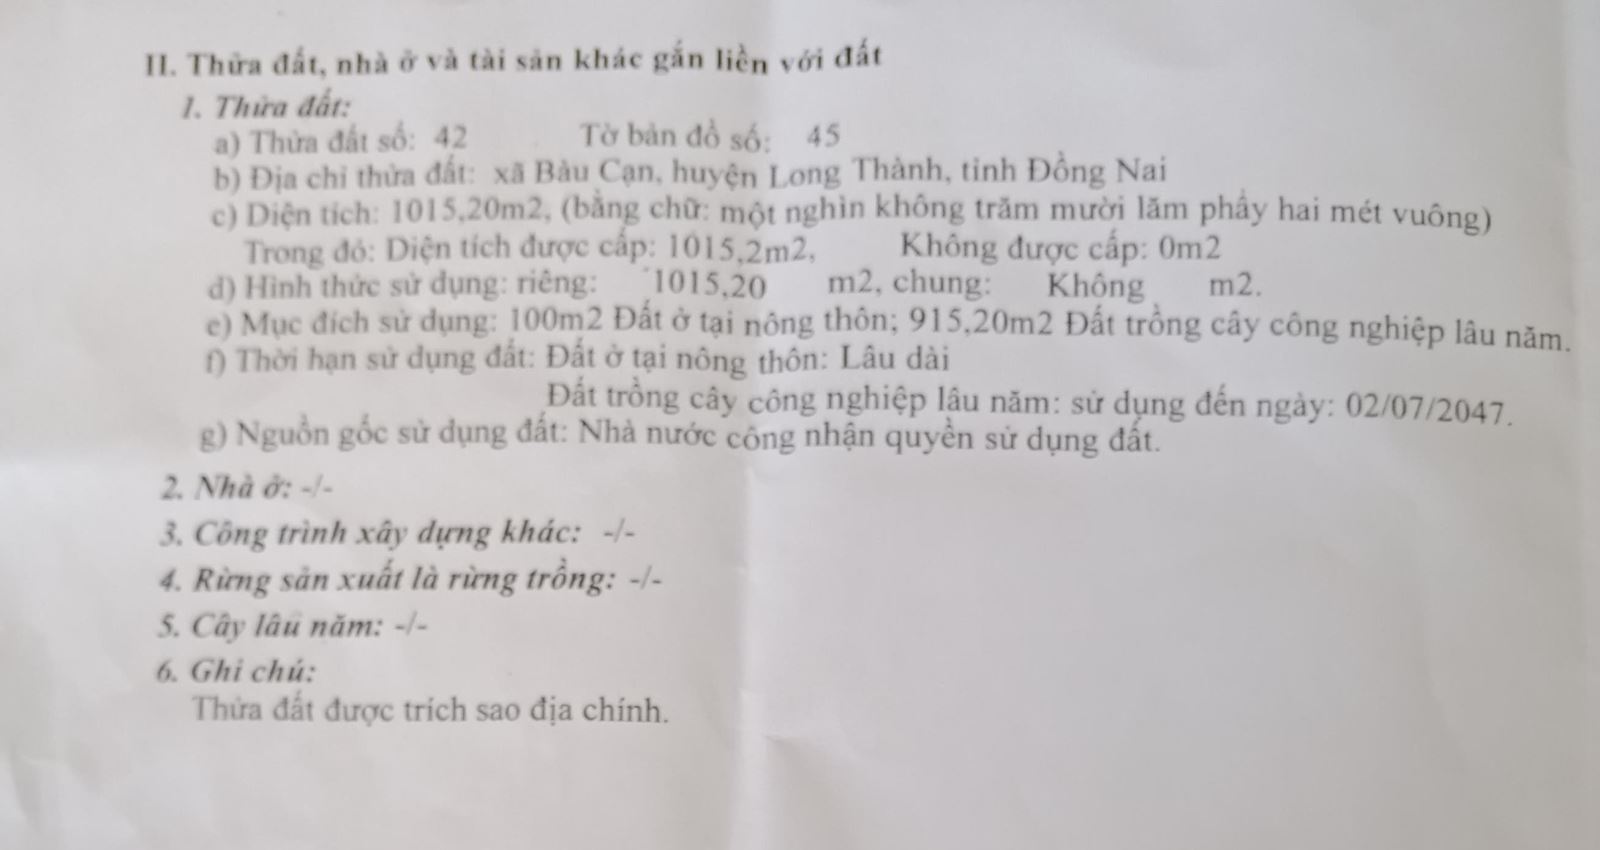 Bán đất xã Bàu Cạn Huyện Long Thành tỉnh Đồng Nai